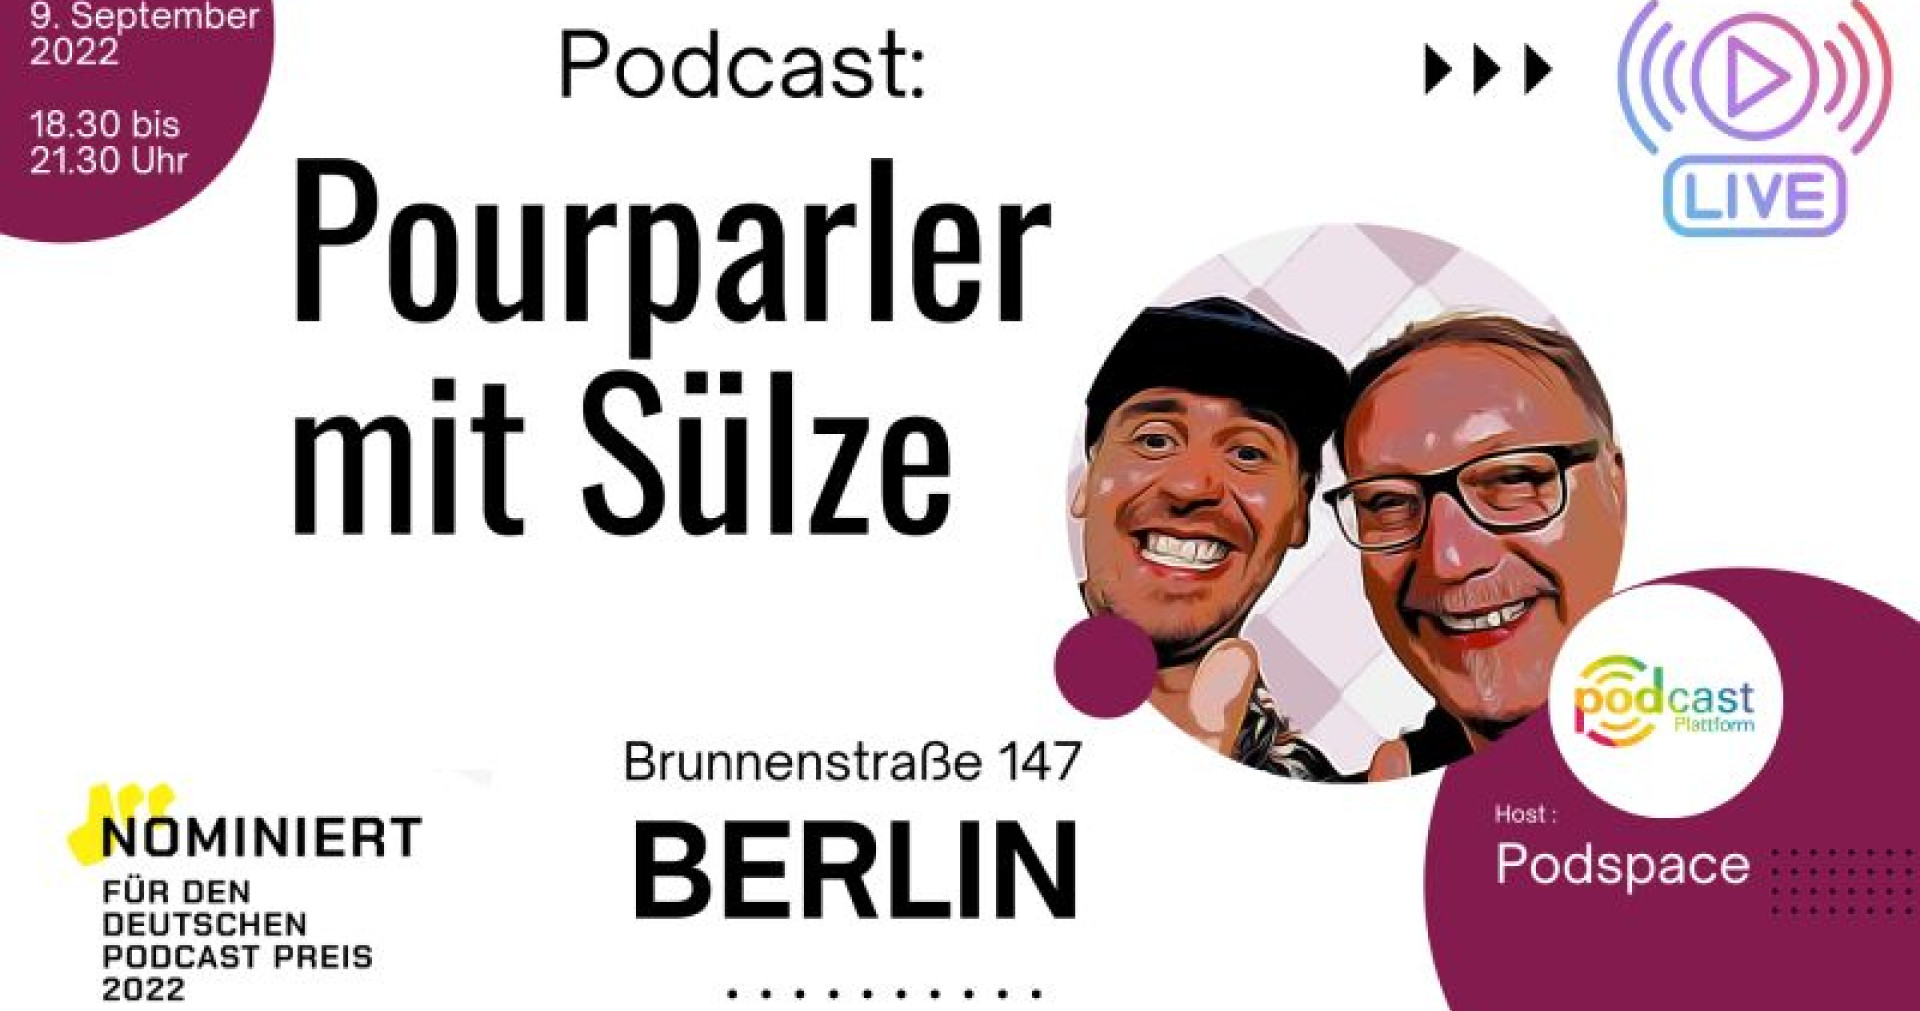 'Pourparler mit Sülze' am 9. September live im Podspace